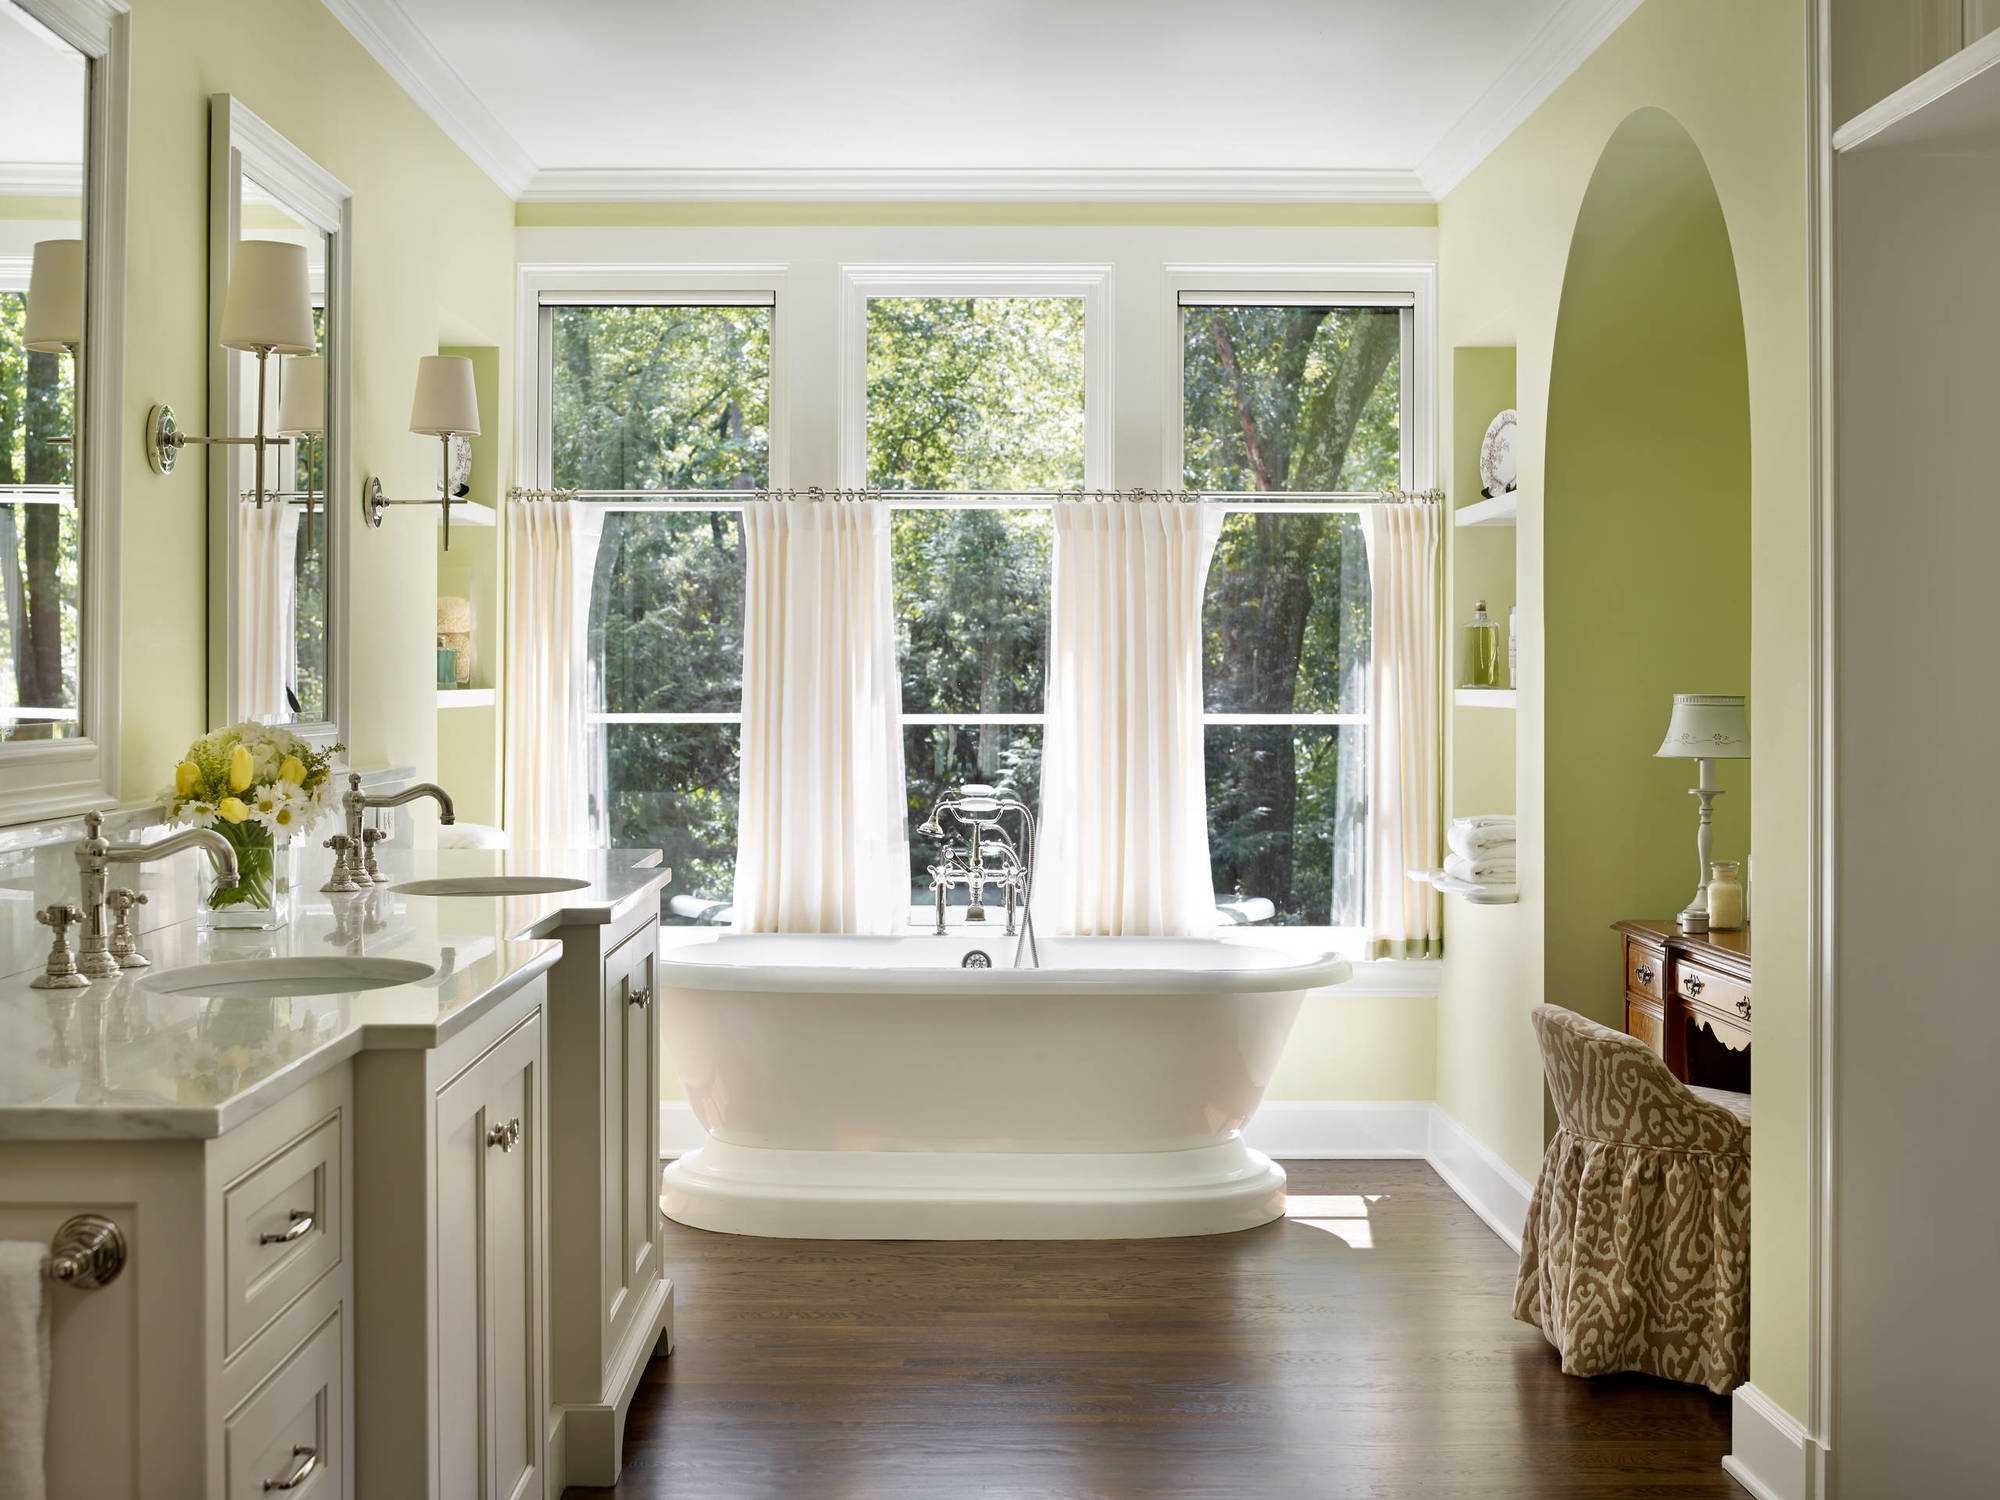 Окно в ванной комнате - оформляем со вкусом! 90 фото примеров дизайна.